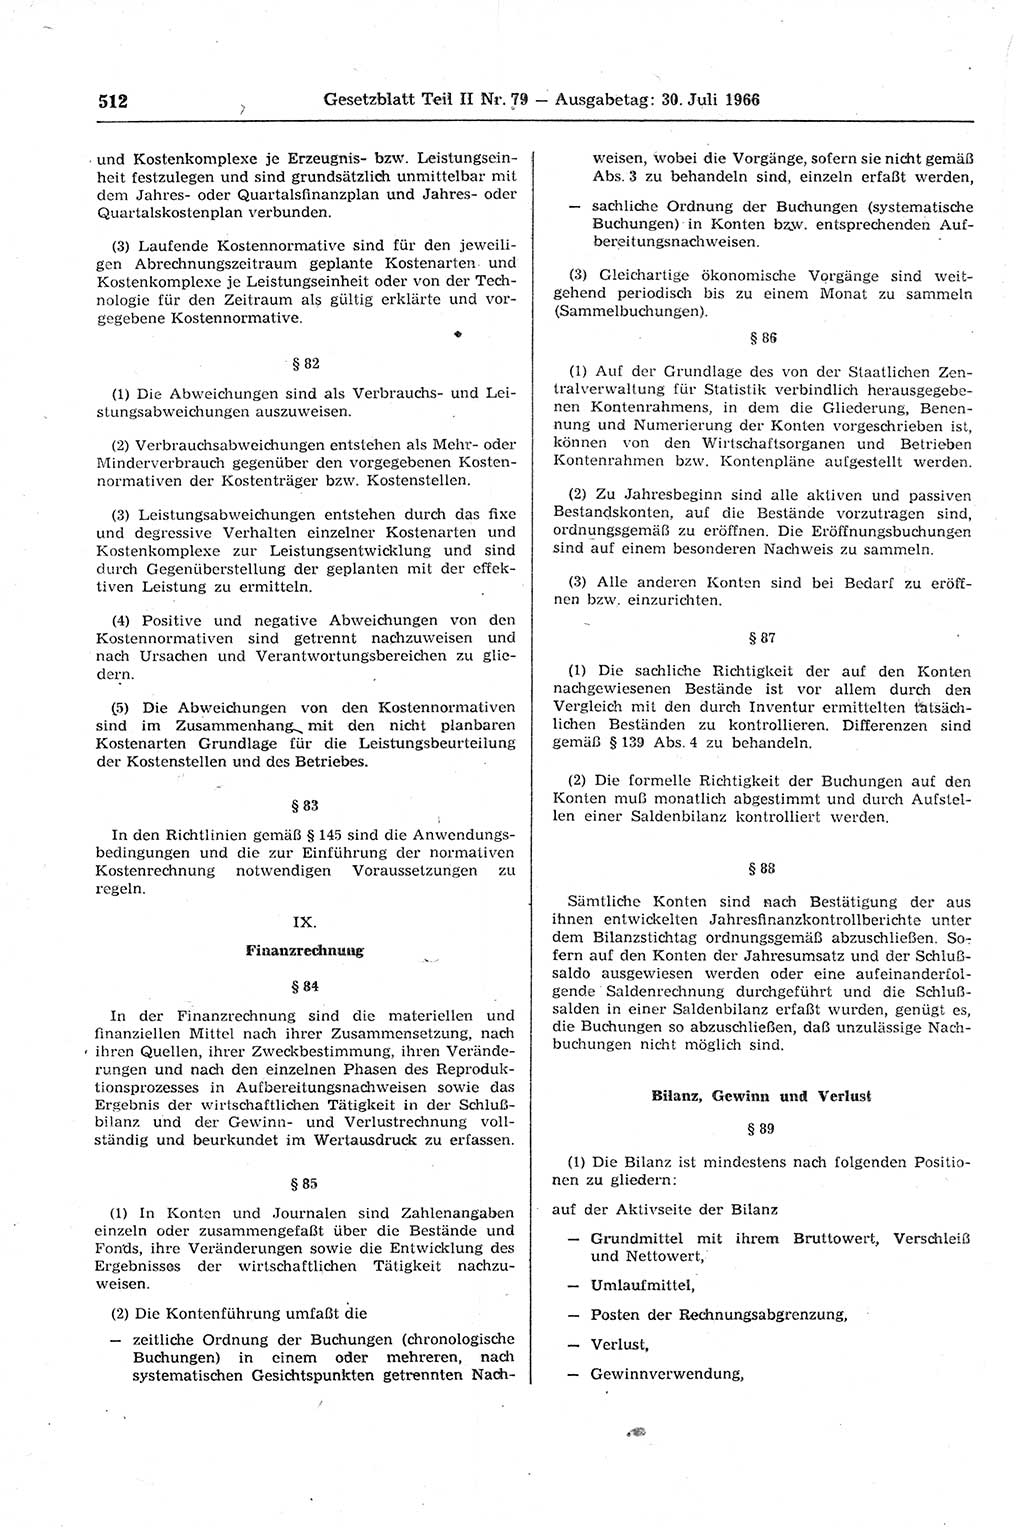 Gesetzblatt (GBl.) der Deutschen Demokratischen Republik (DDR) Teil ⅠⅠ 1966, Seite 512 (GBl. DDR ⅠⅠ 1966, S. 512)